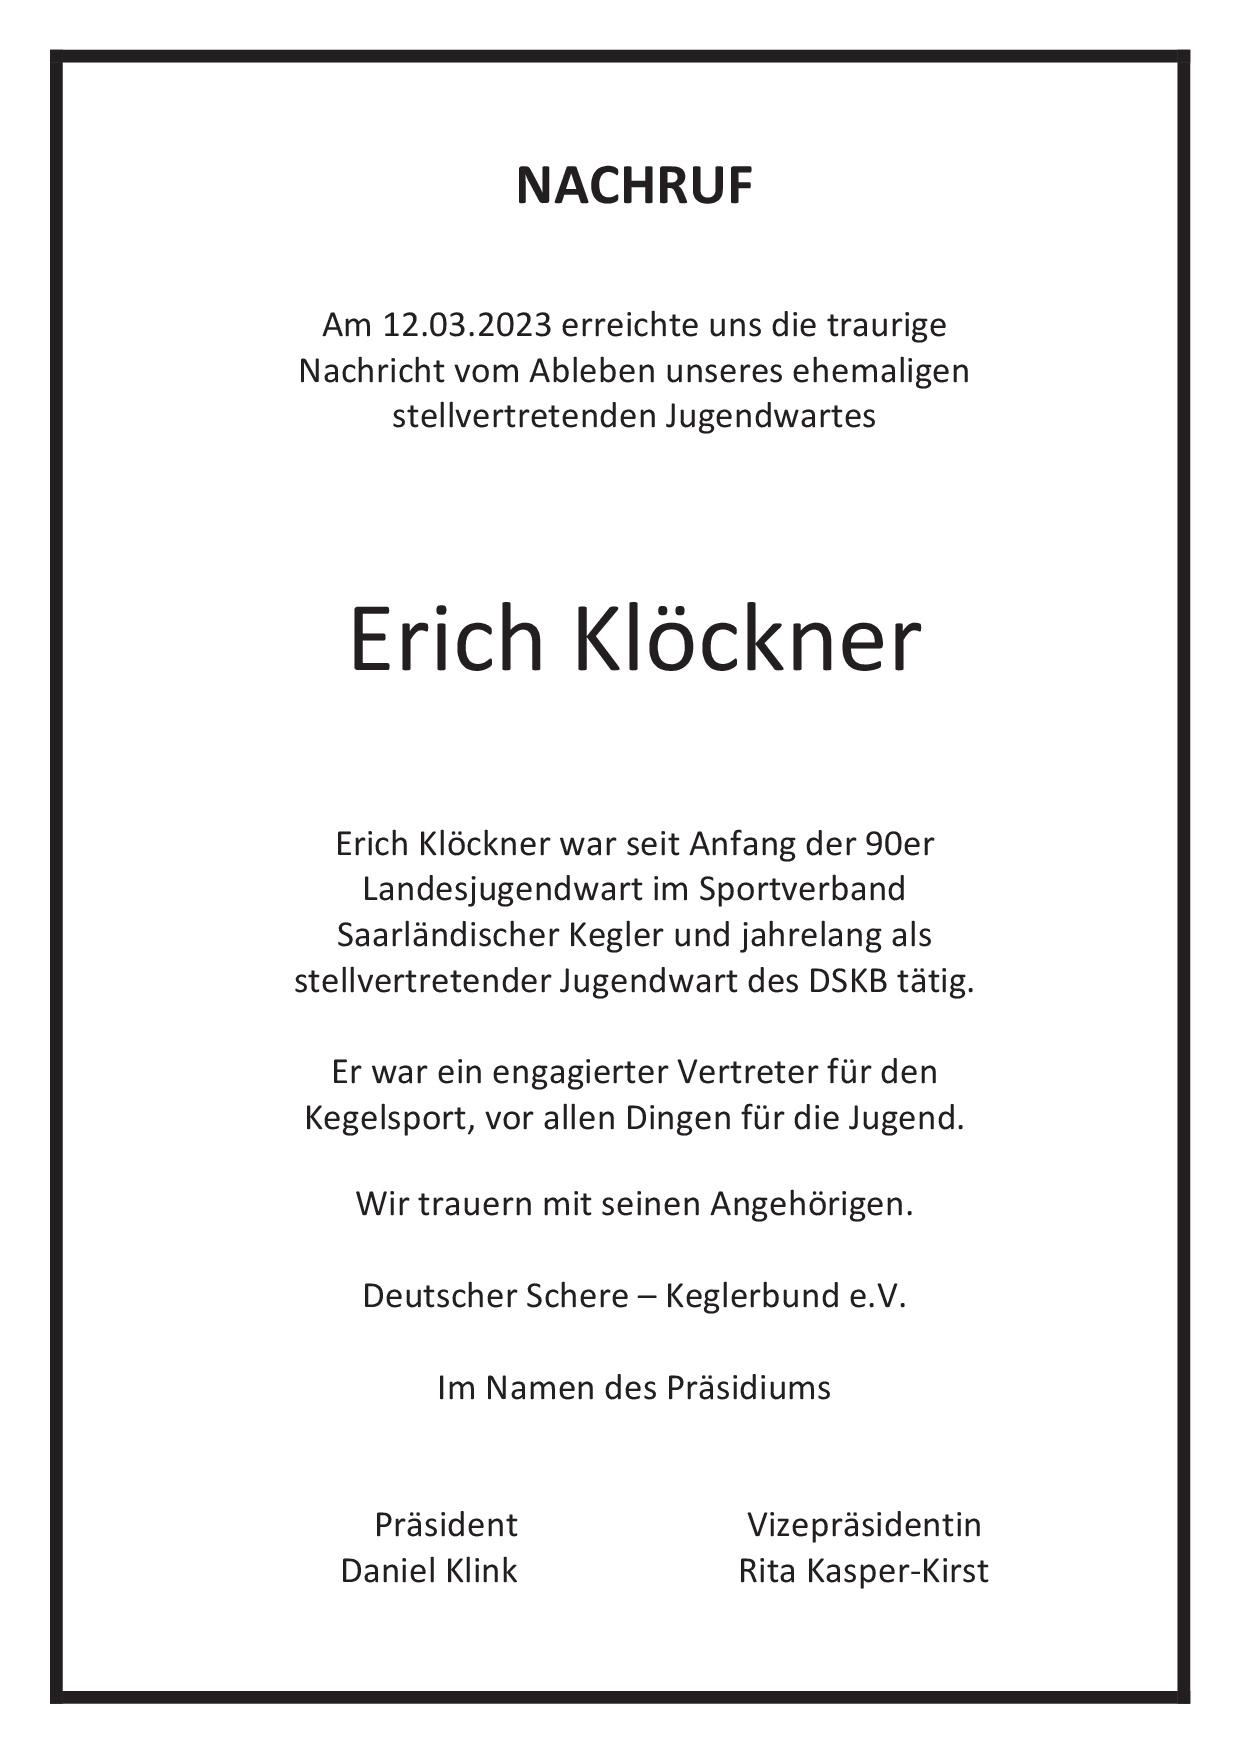 Nachruf_Erich Klöckner (1)